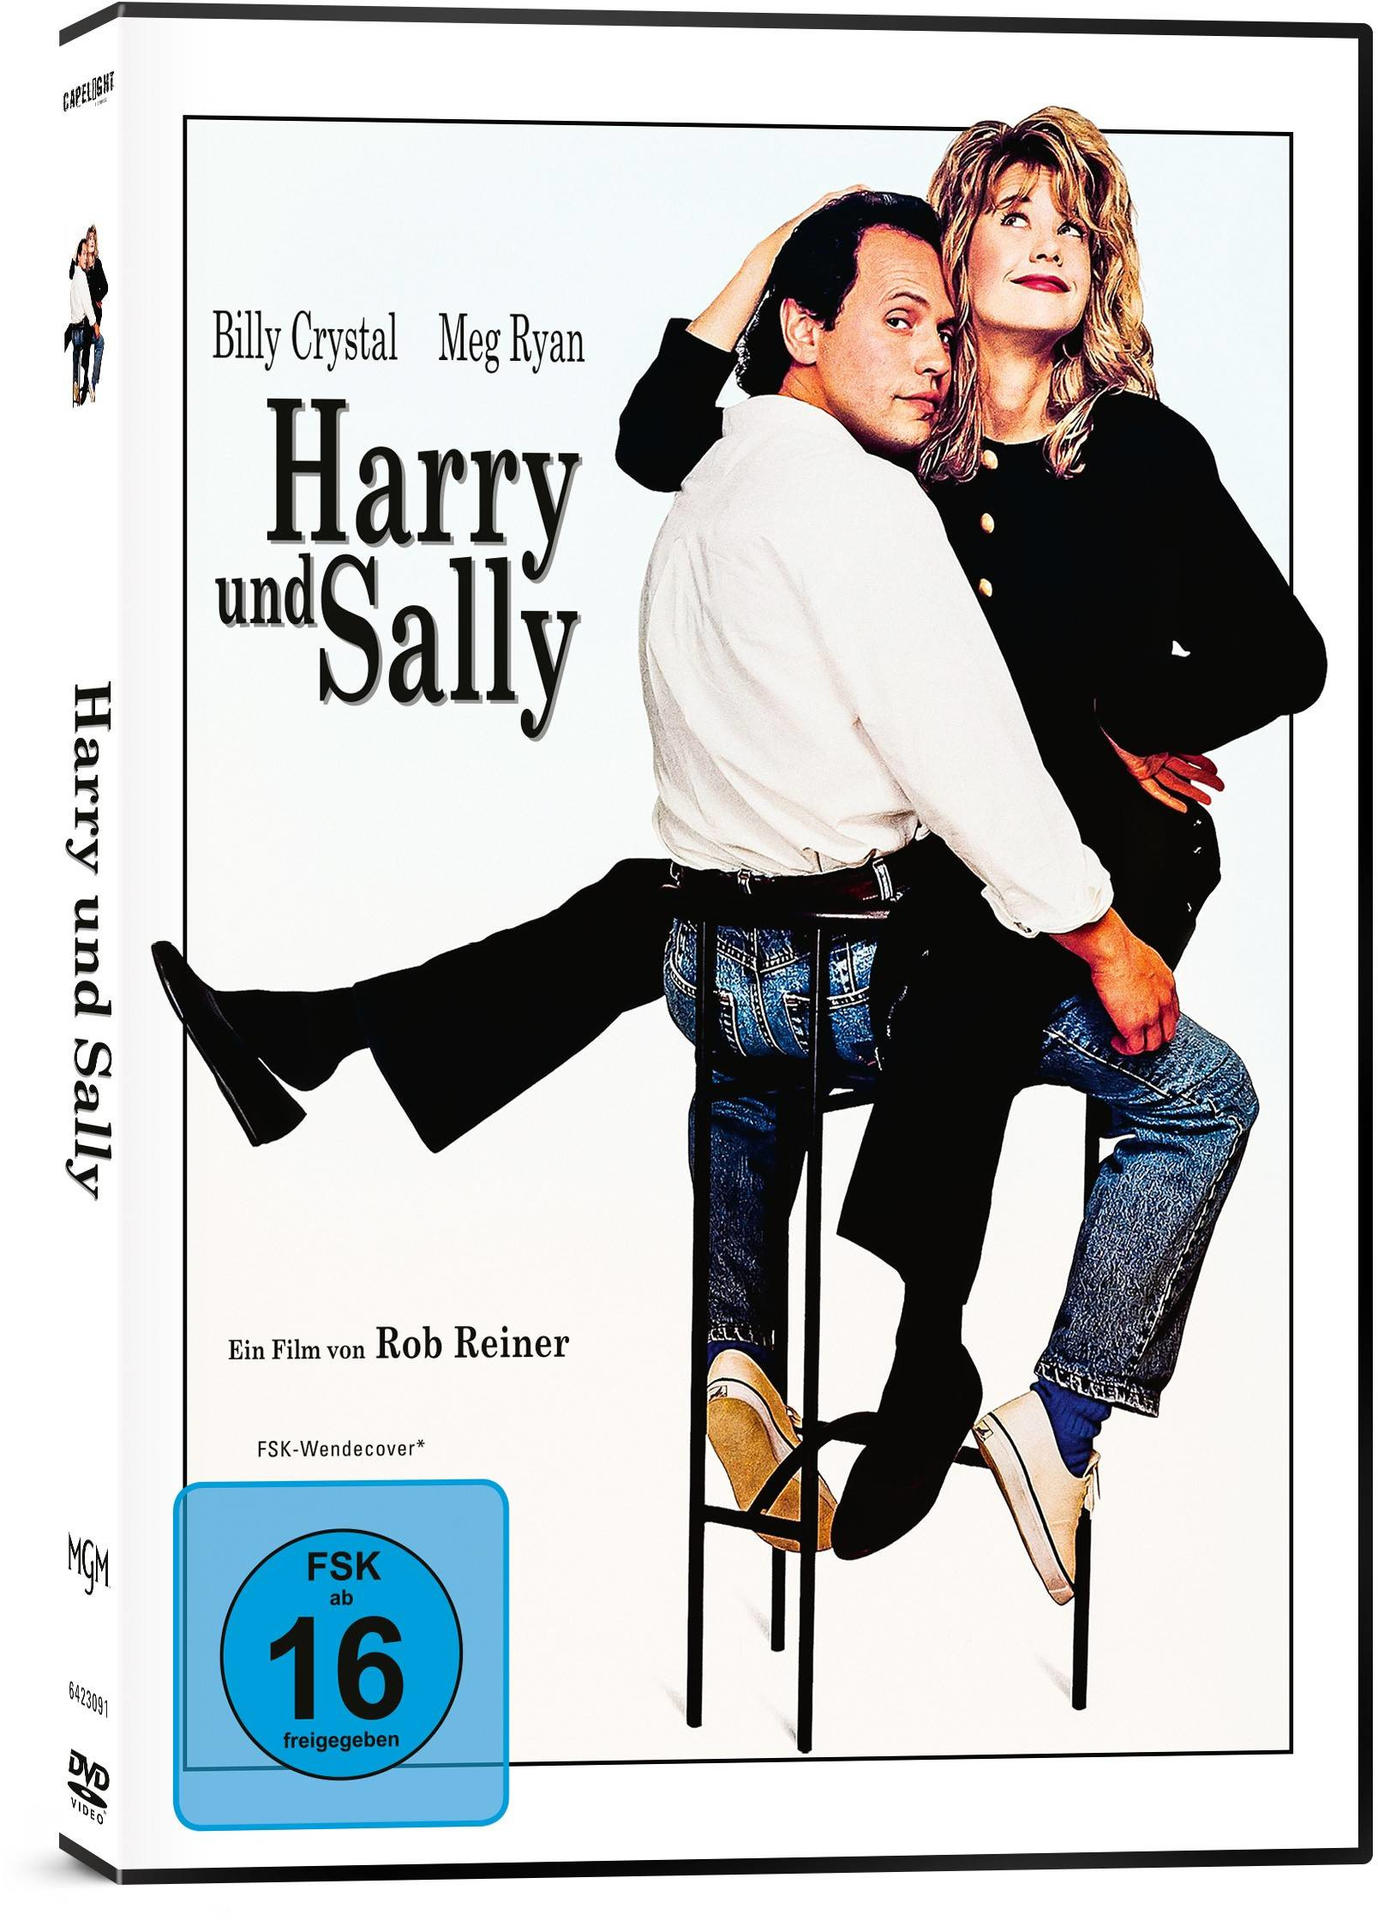 Harry und DVD Sally